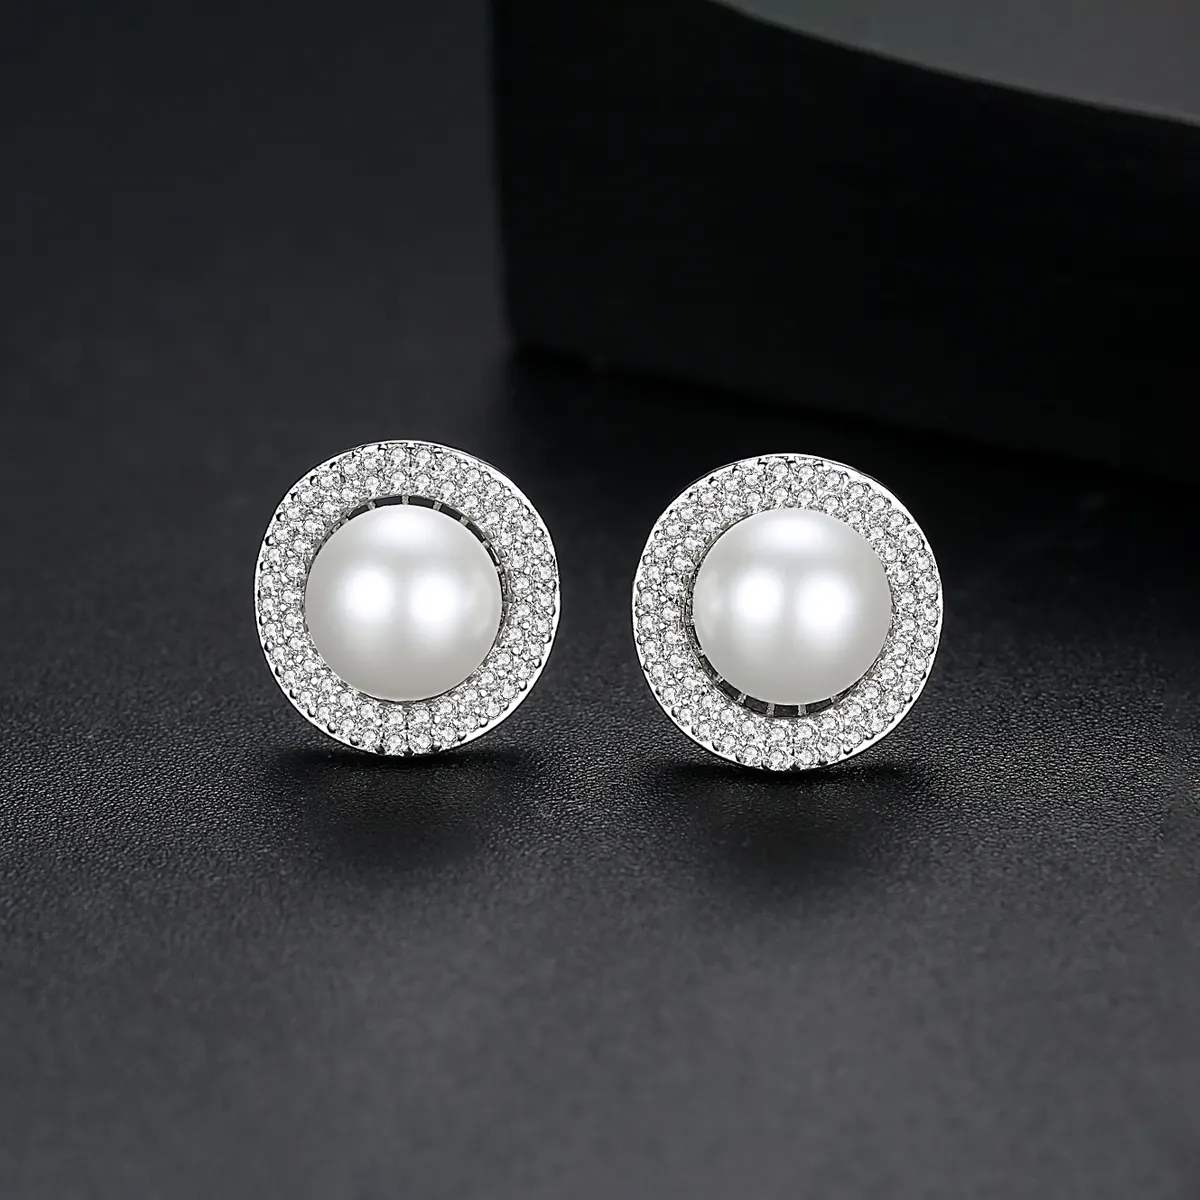 LUOTEEMI Round Zirconia Earrings Imitation Pearl Stud Elegant Earrings Jewelry for Women